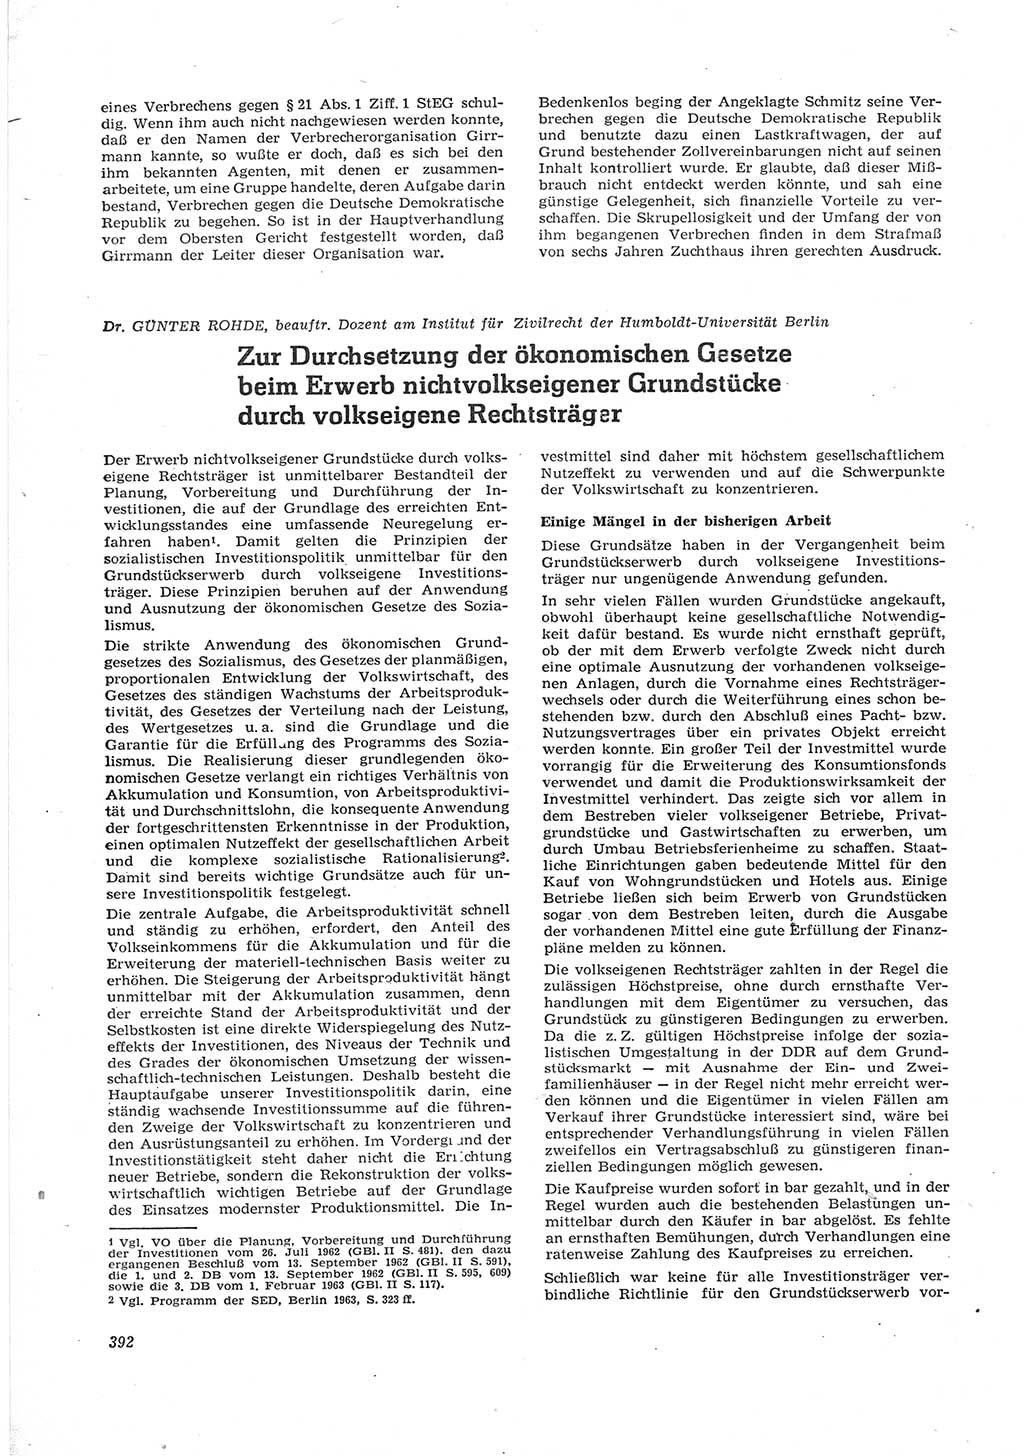 Neue Justiz (NJ), Zeitschrift für Recht und Rechtswissenschaft [Deutsche Demokratische Republik (DDR)], 17. Jahrgang 1963, Seite 392 (NJ DDR 1963, S. 392)